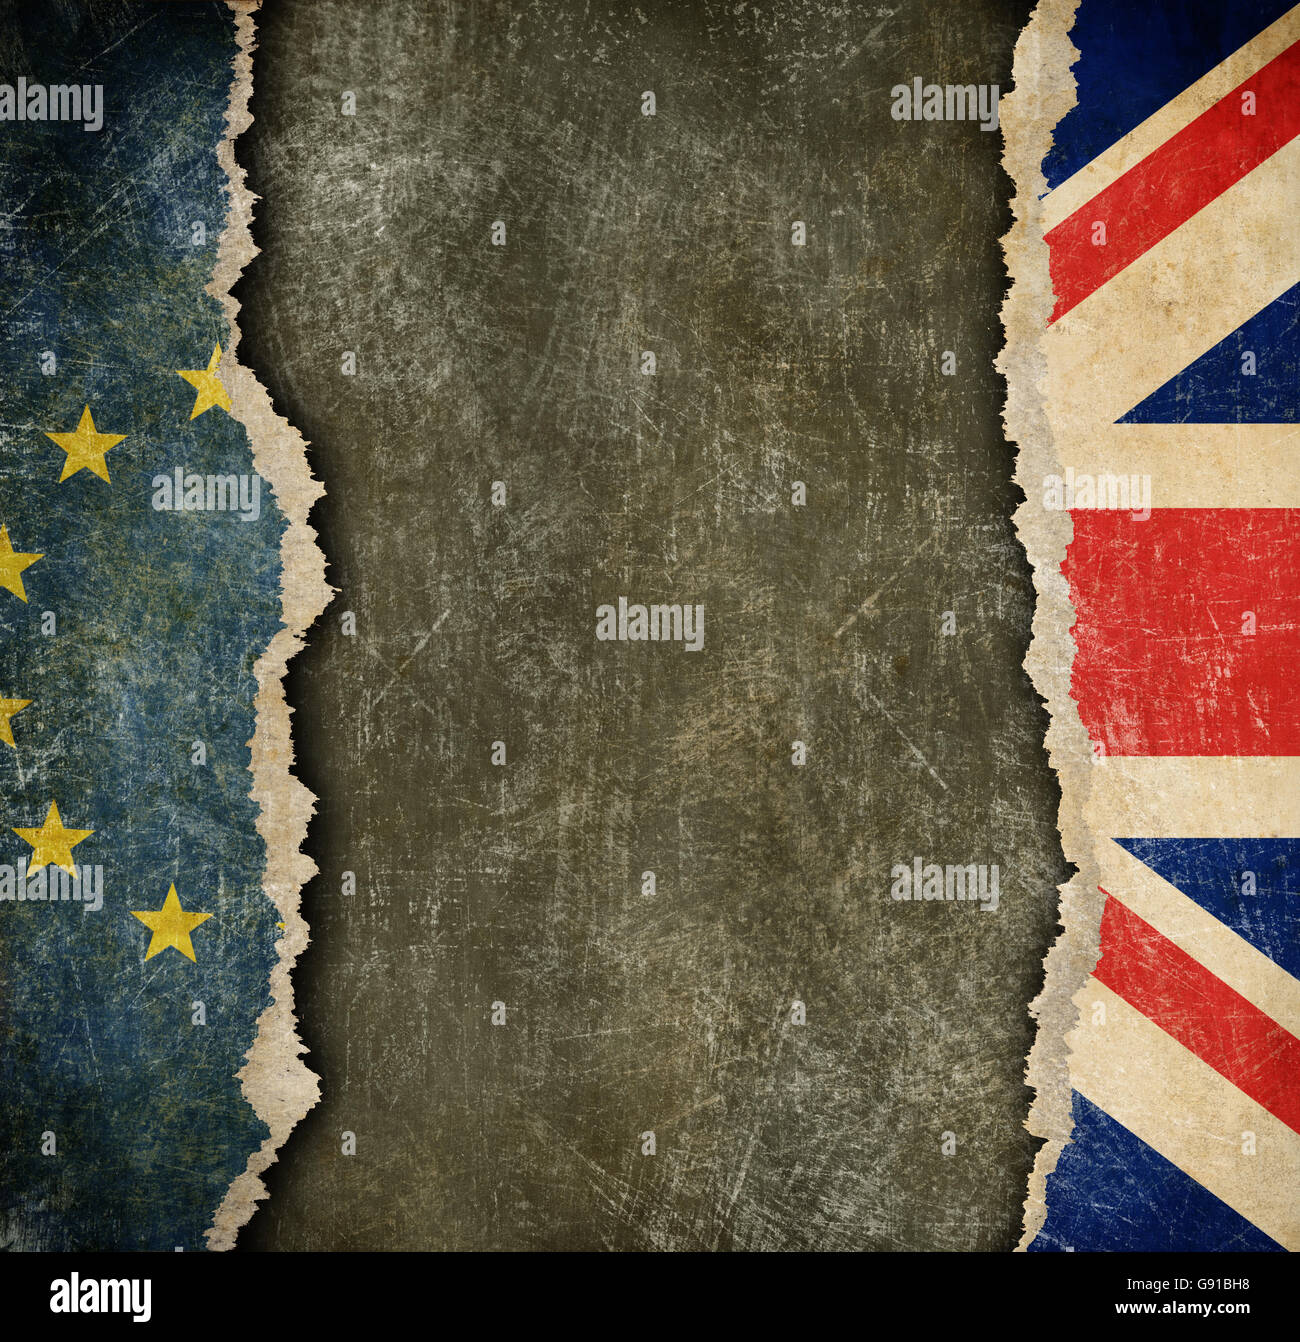 Gran Bretaña la retirada de la Unión Europea concepto brexit Foto de stock